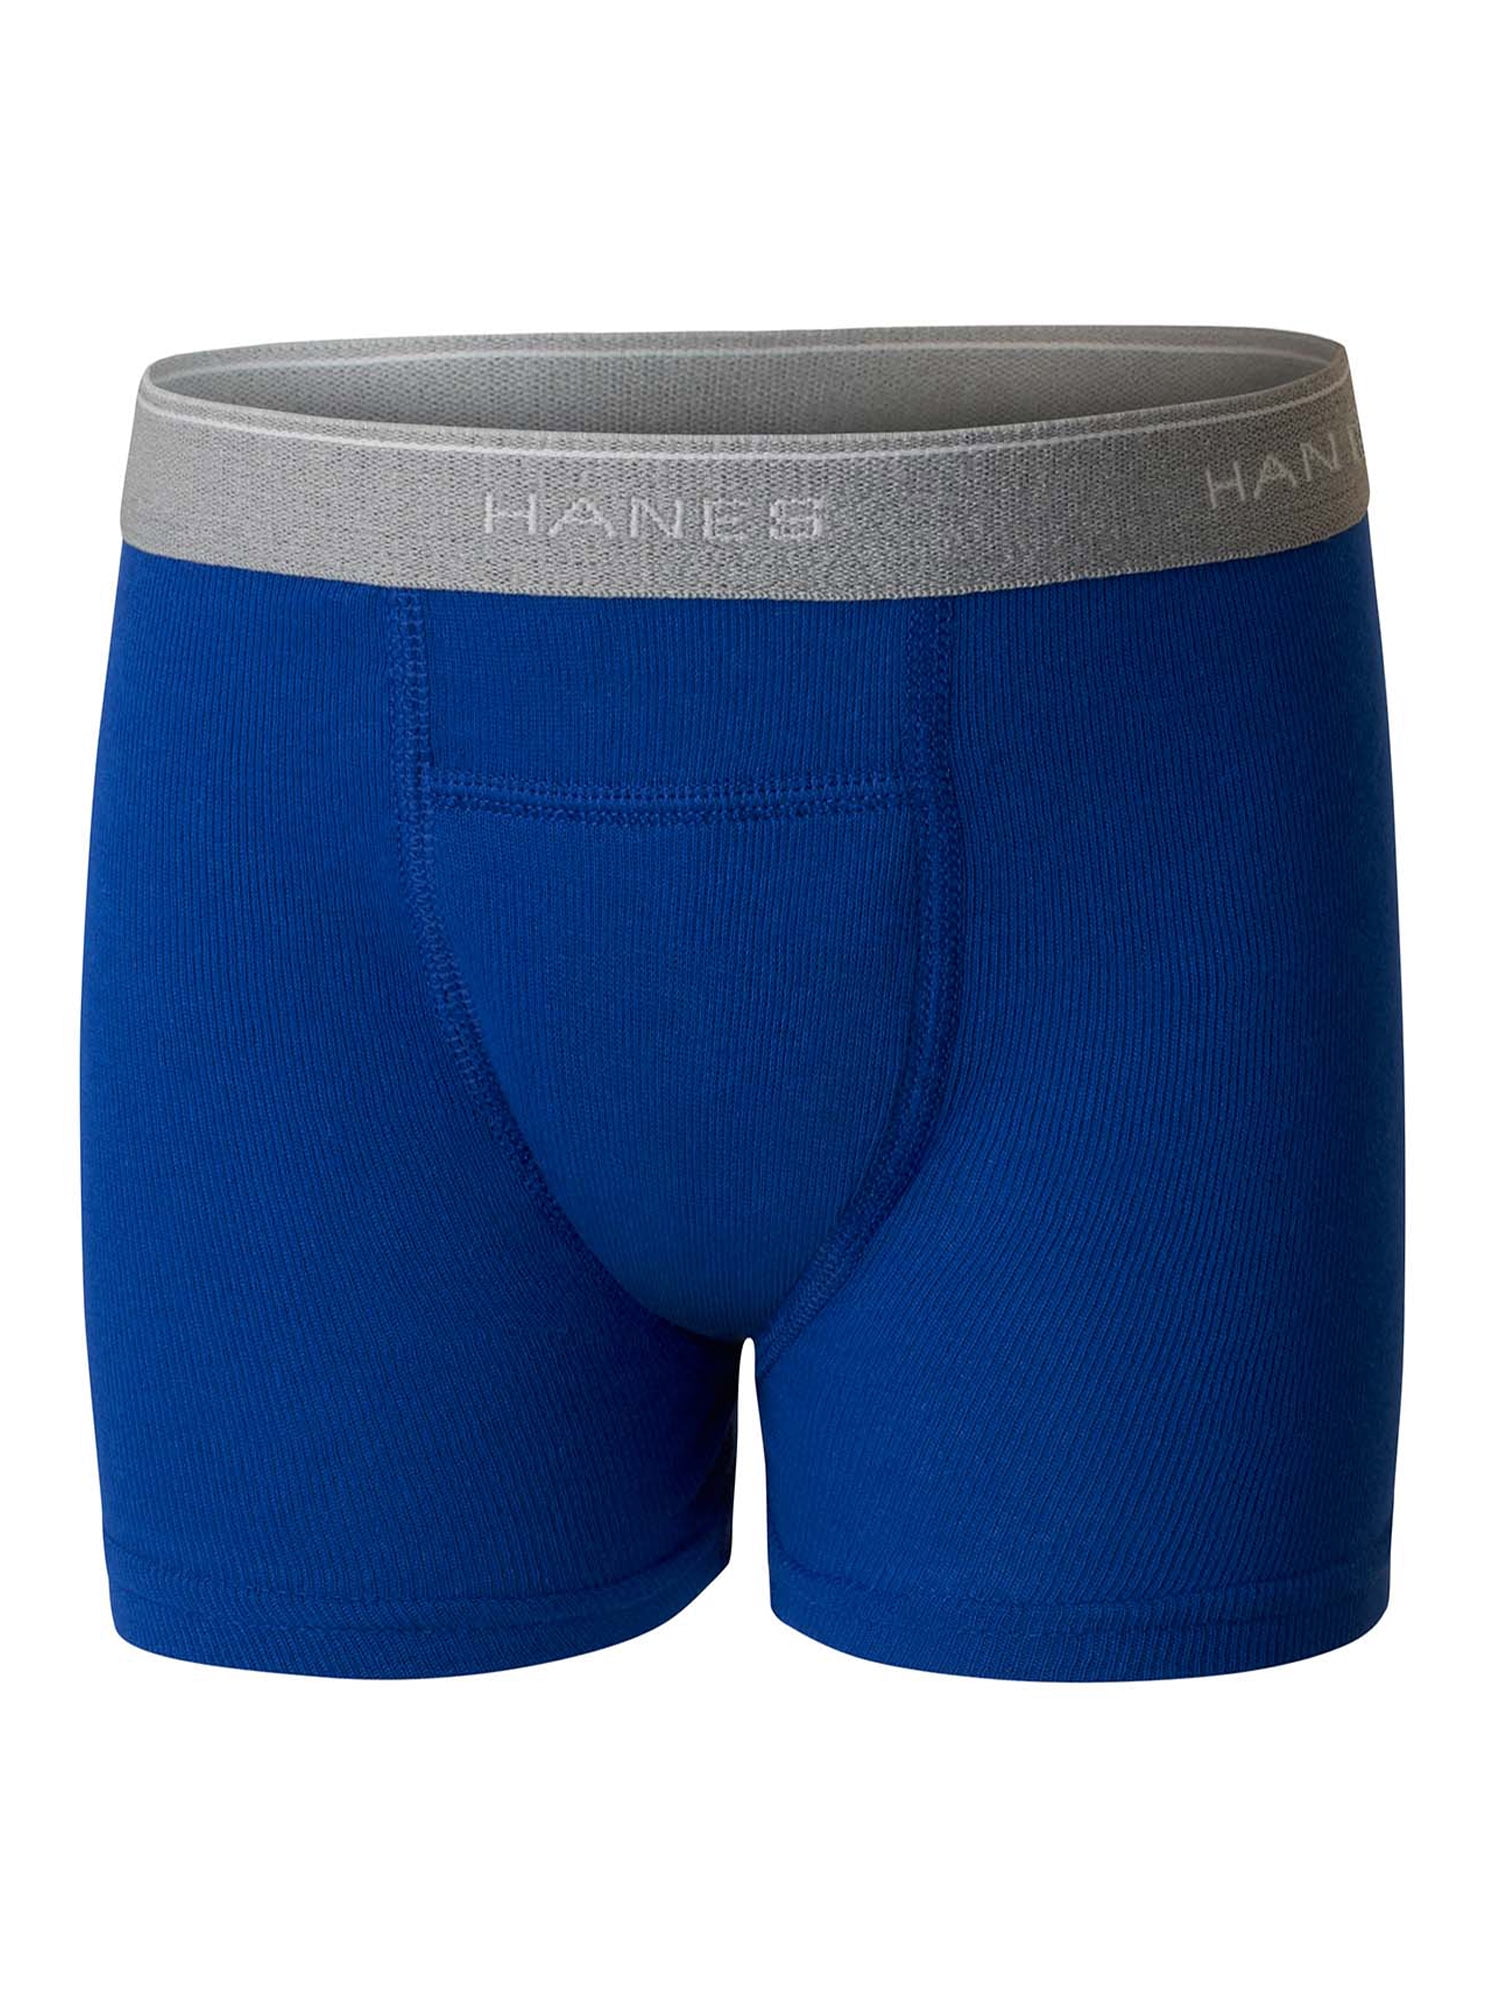 Hanes Toddler Boy Potty Trainer Boxer Brief Underwear, 6 Pack